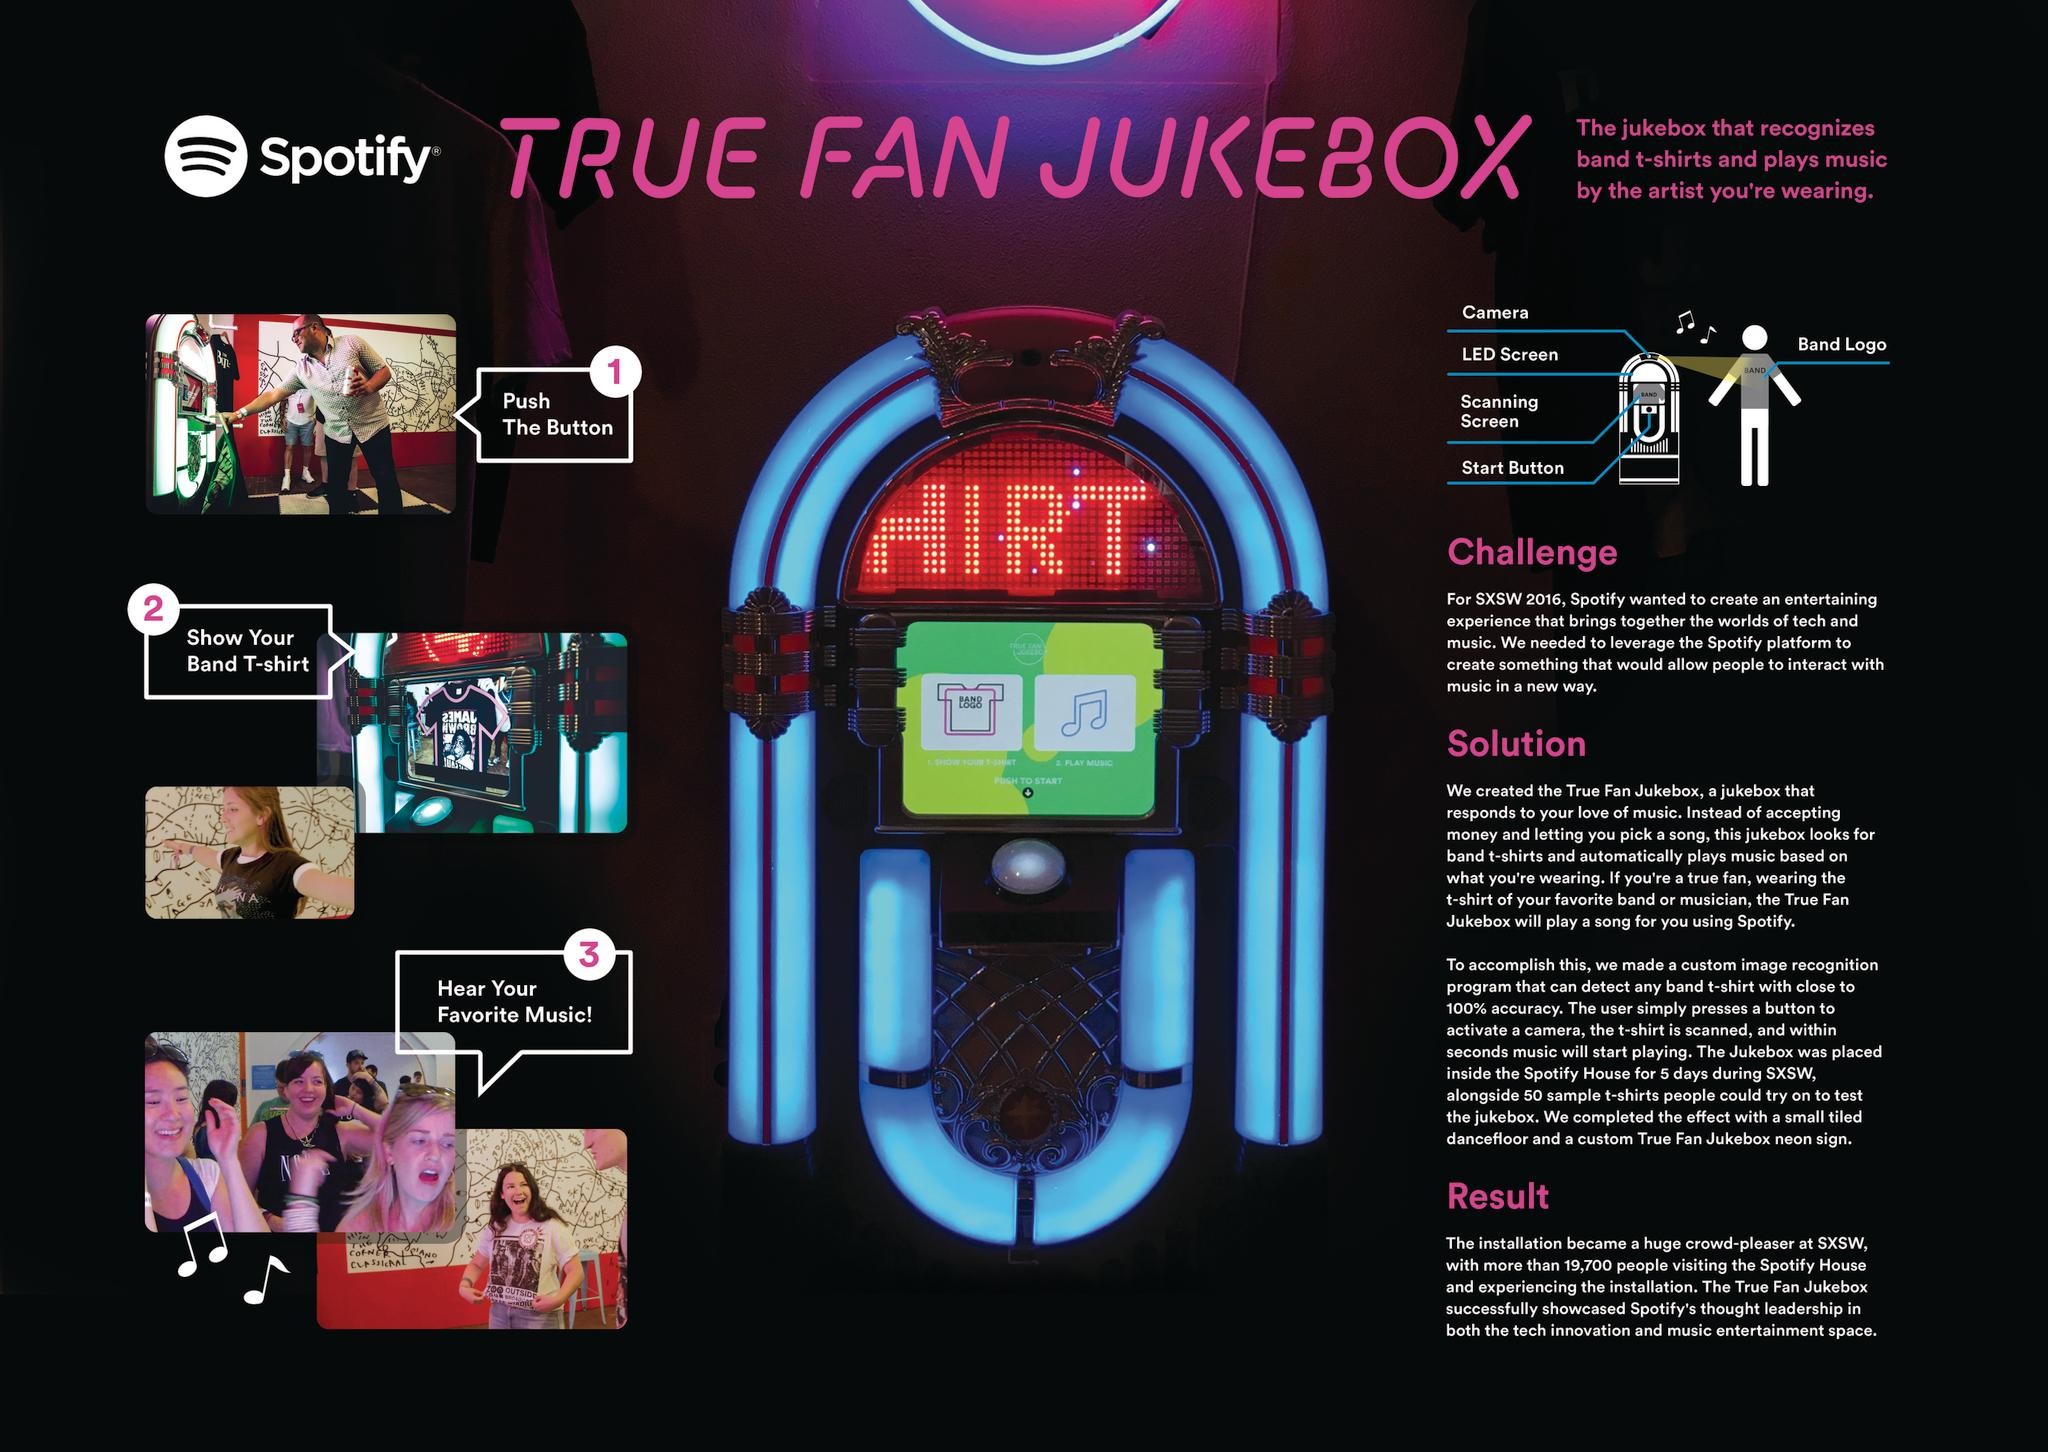 Spotify True Fan Jukebox